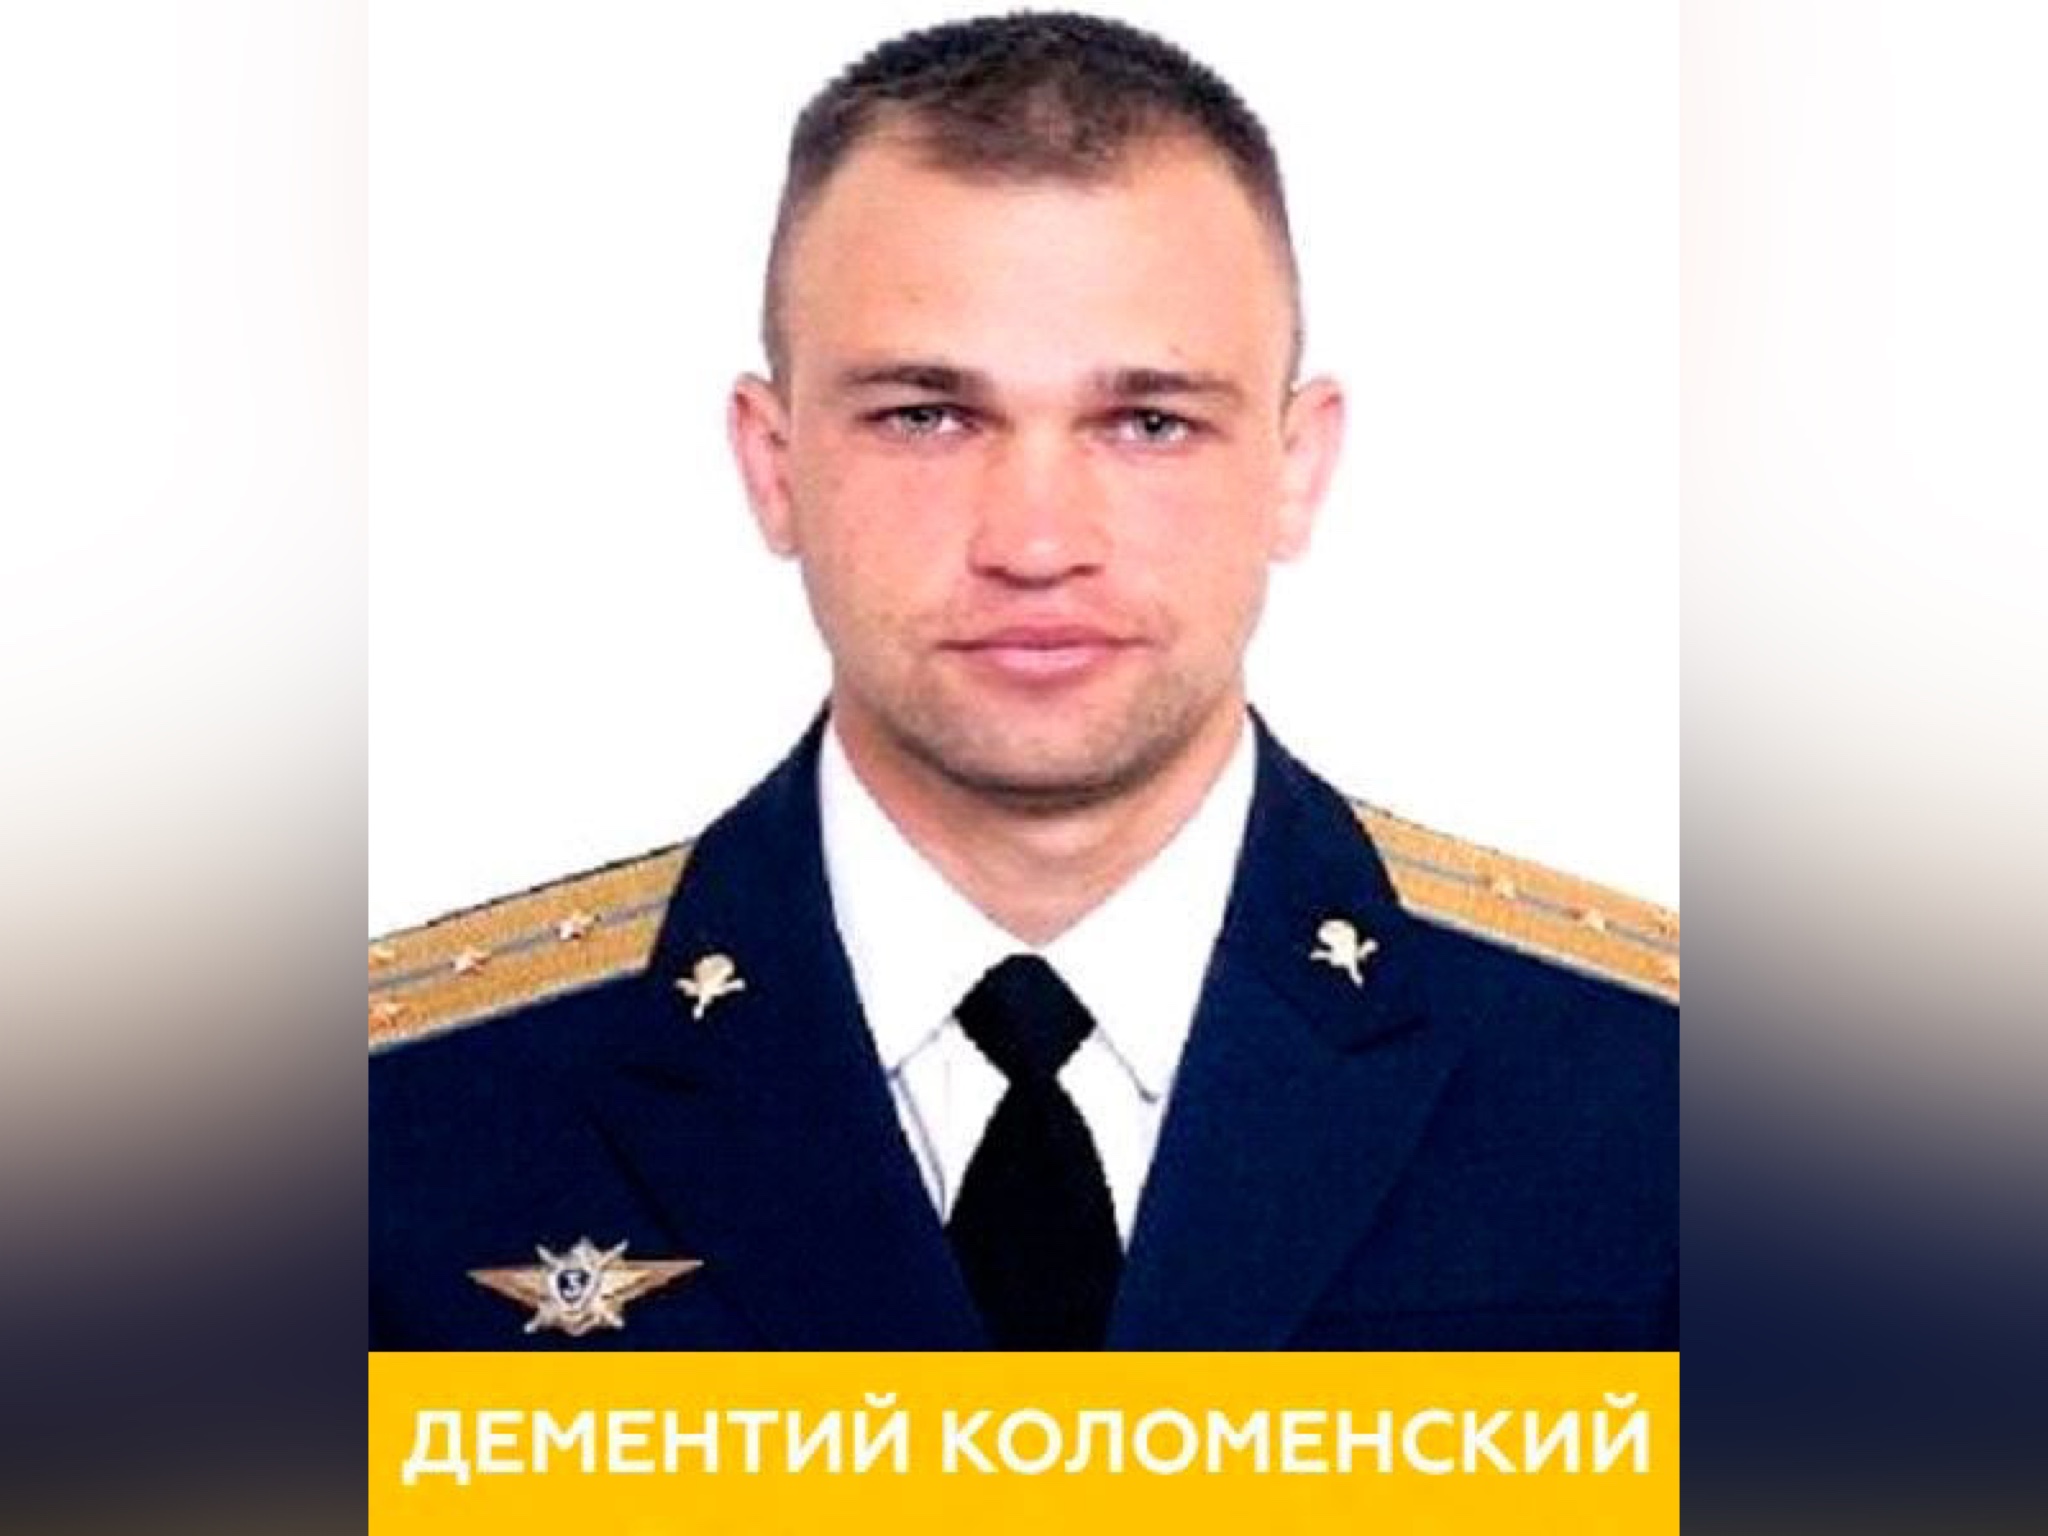 Капитан Дементий Коломенский. Фото © Минобороны РФ